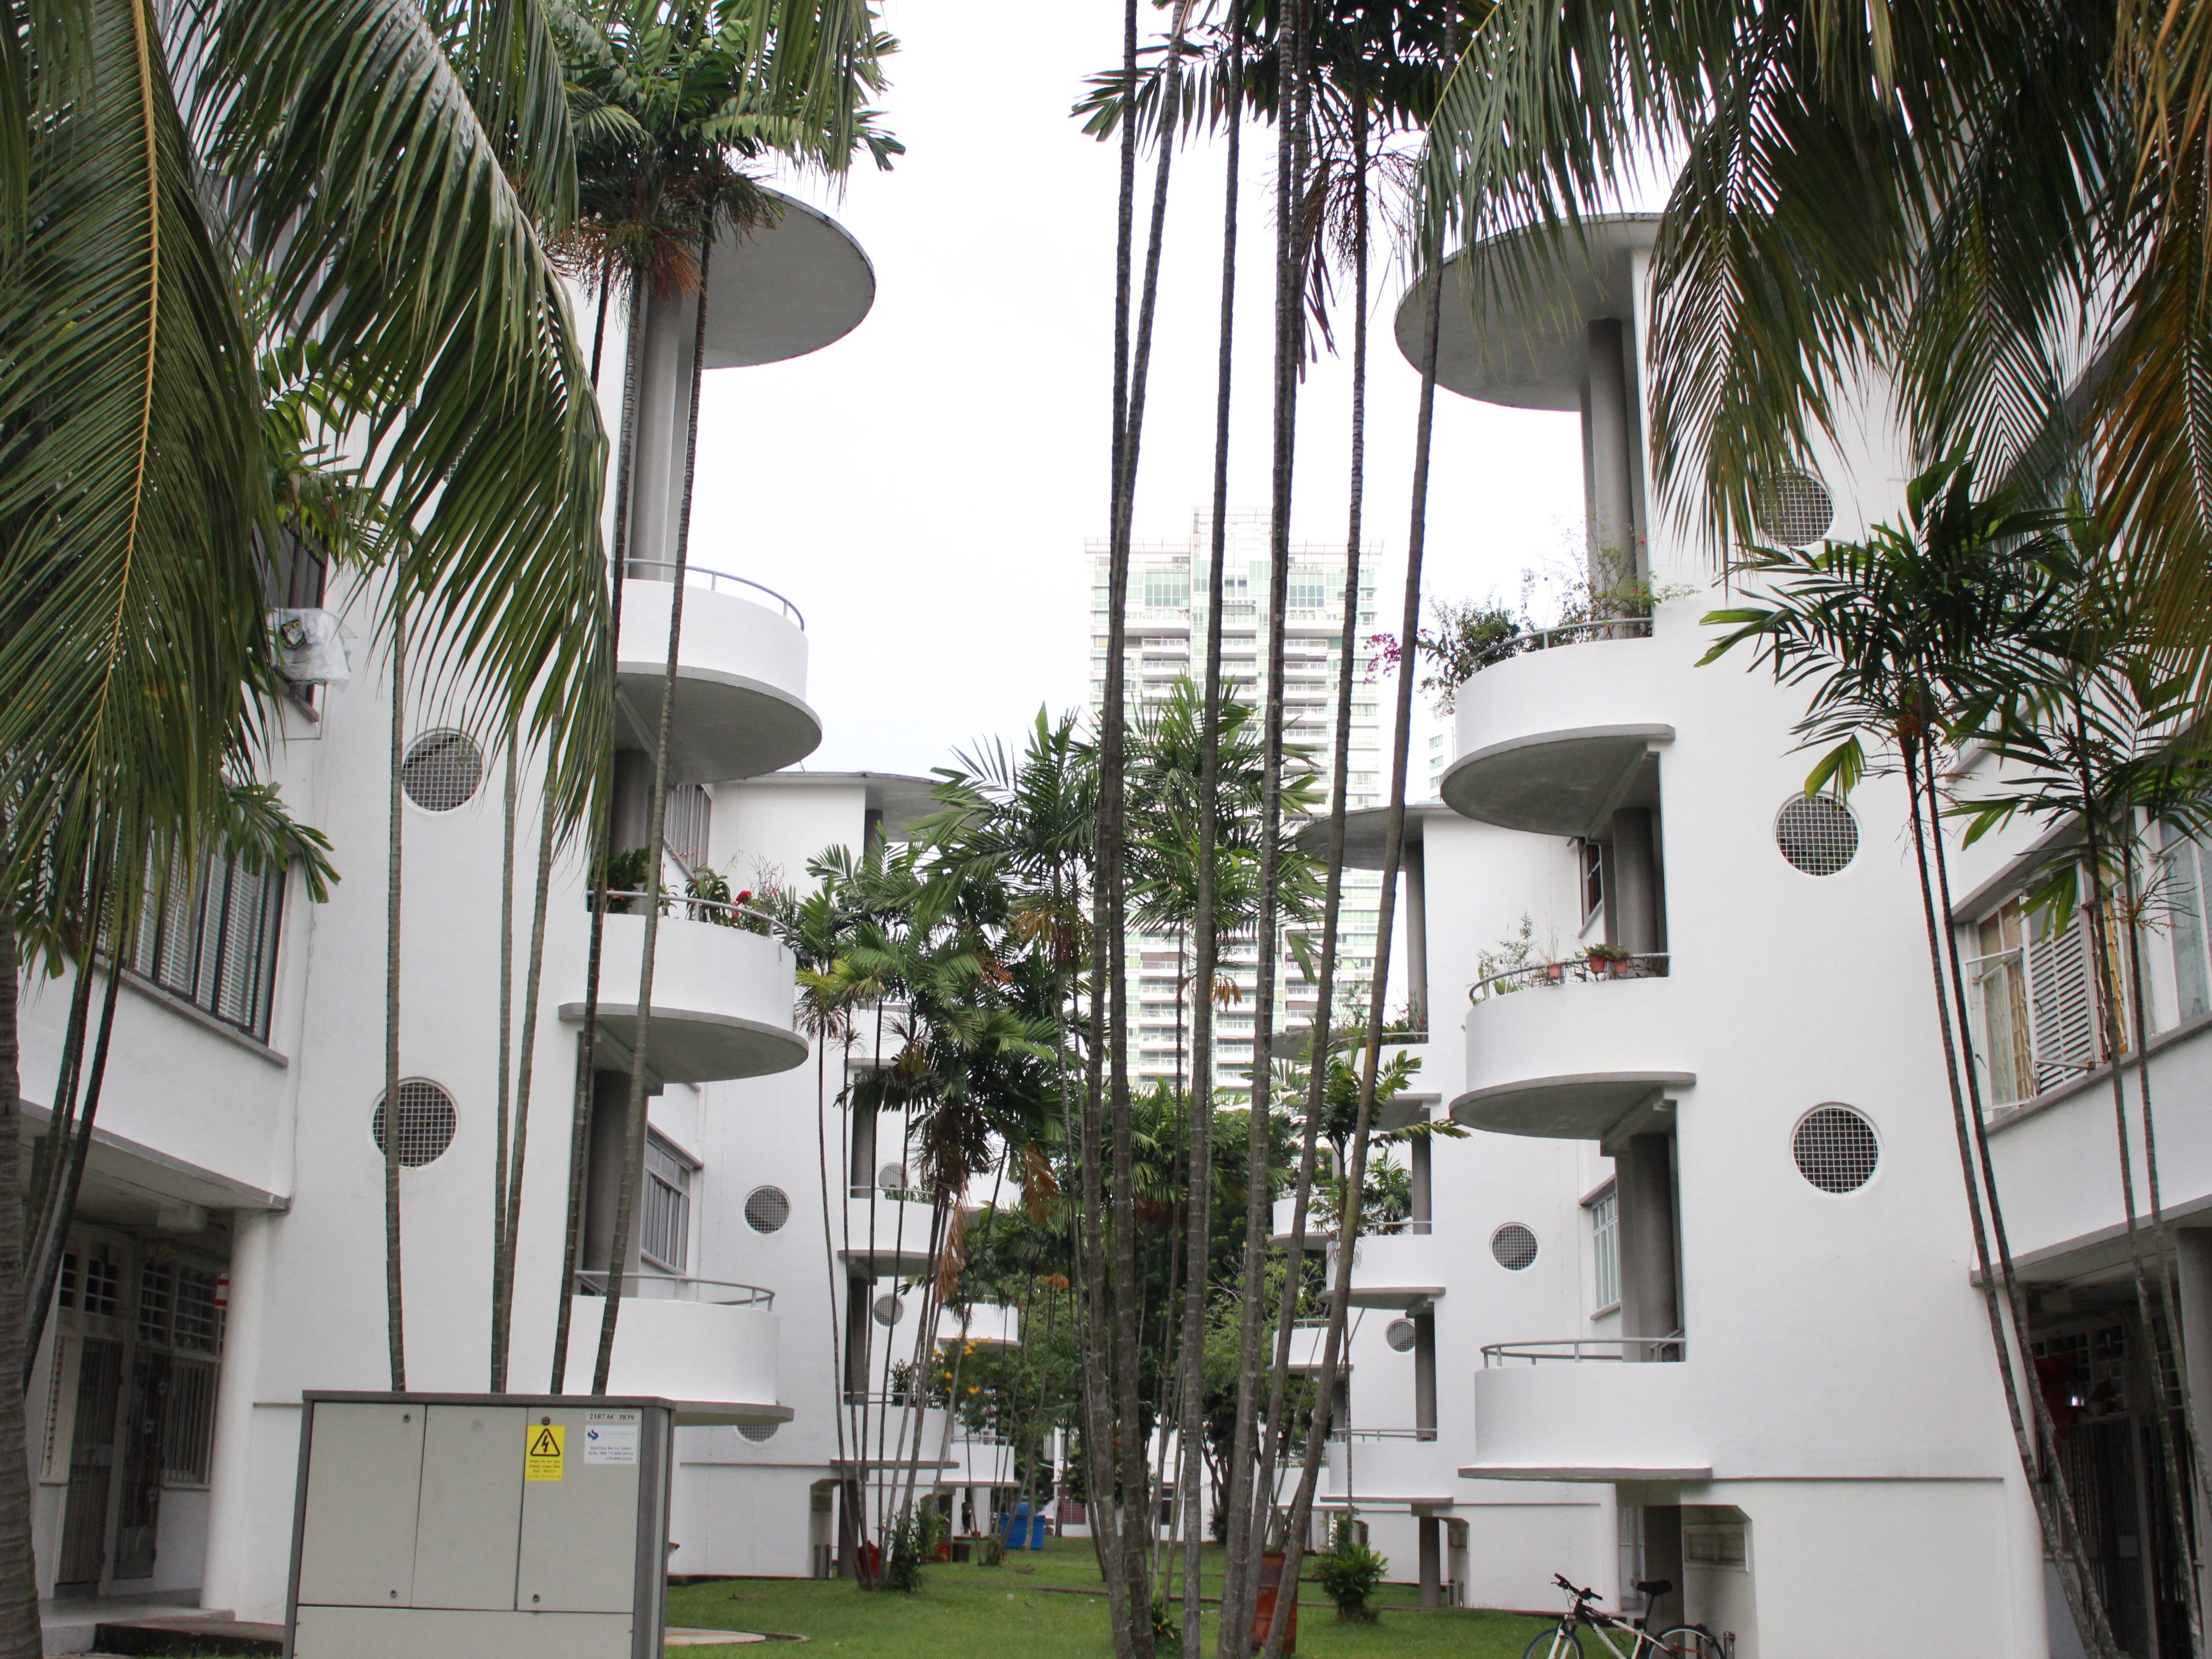 Sozialwohnungen in Tiong Bahru, Singapur, die von SIT nach dem Zweiten Weltkrieg gebaut wurden.